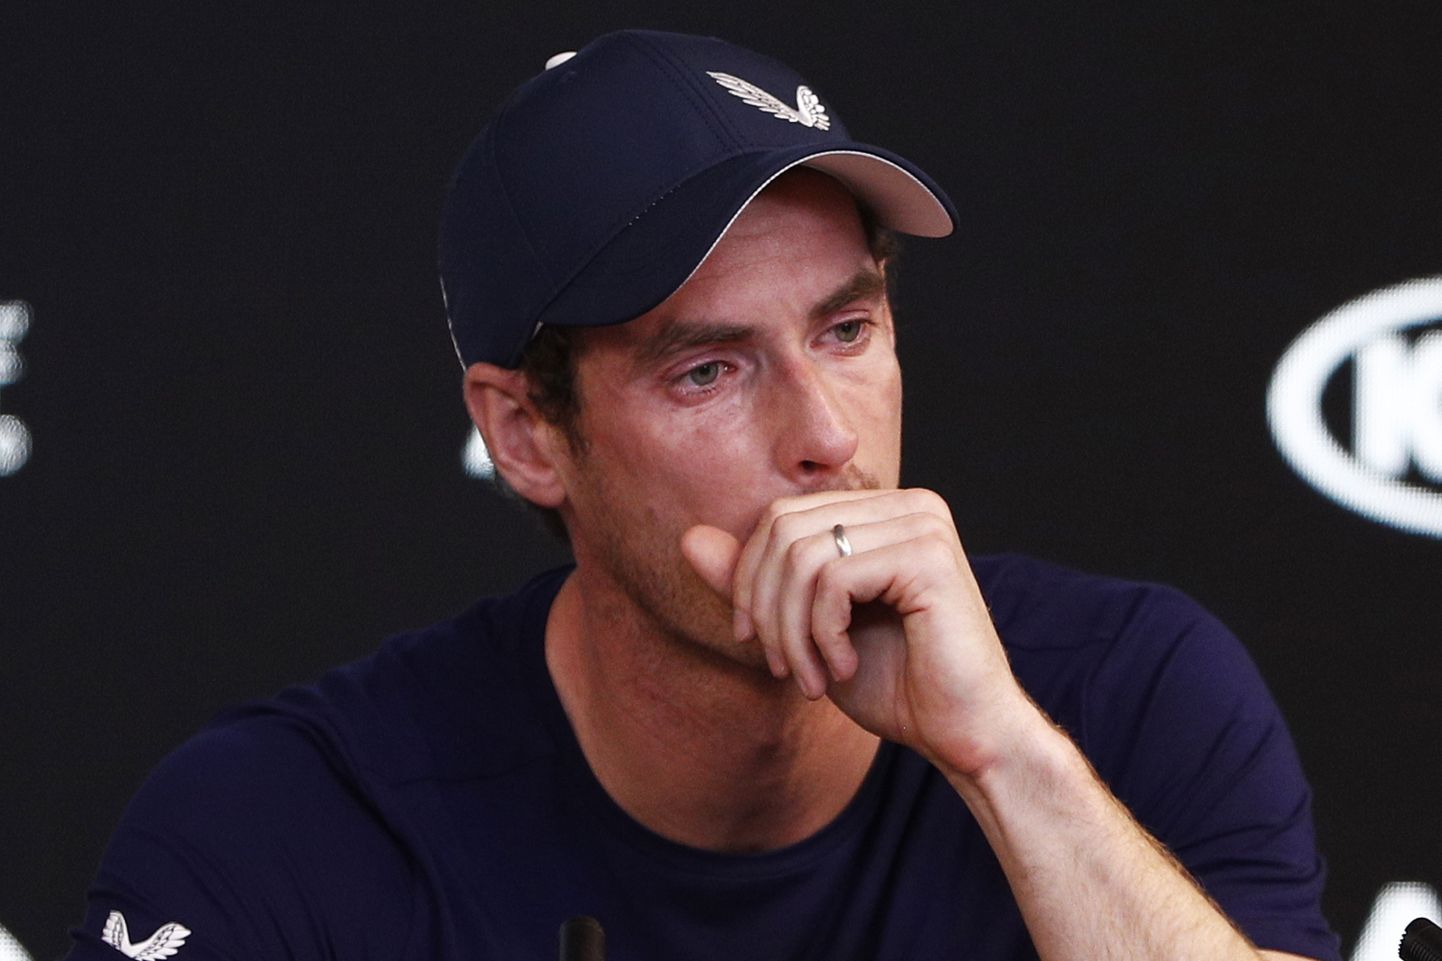 Andy Murray ei suutnud oma olukorrast esialgu ajakirjanike ees rääkida, kuid kogus end siis ja ilmus pressikonverentsile tagasi.